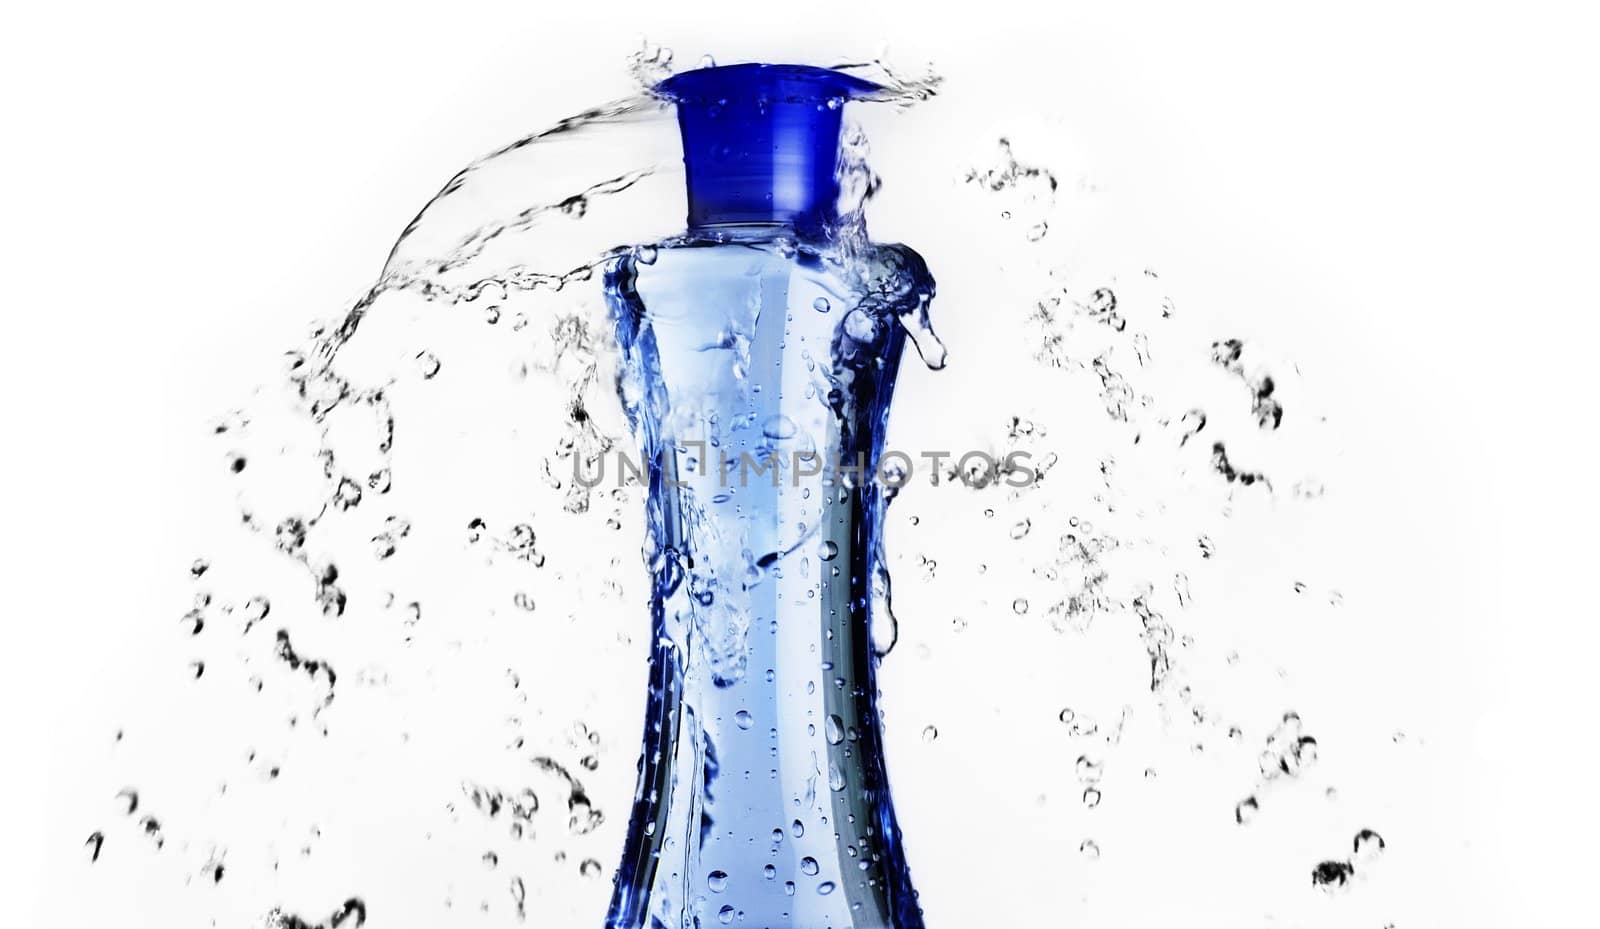 Blue bottle with water splashing around it.